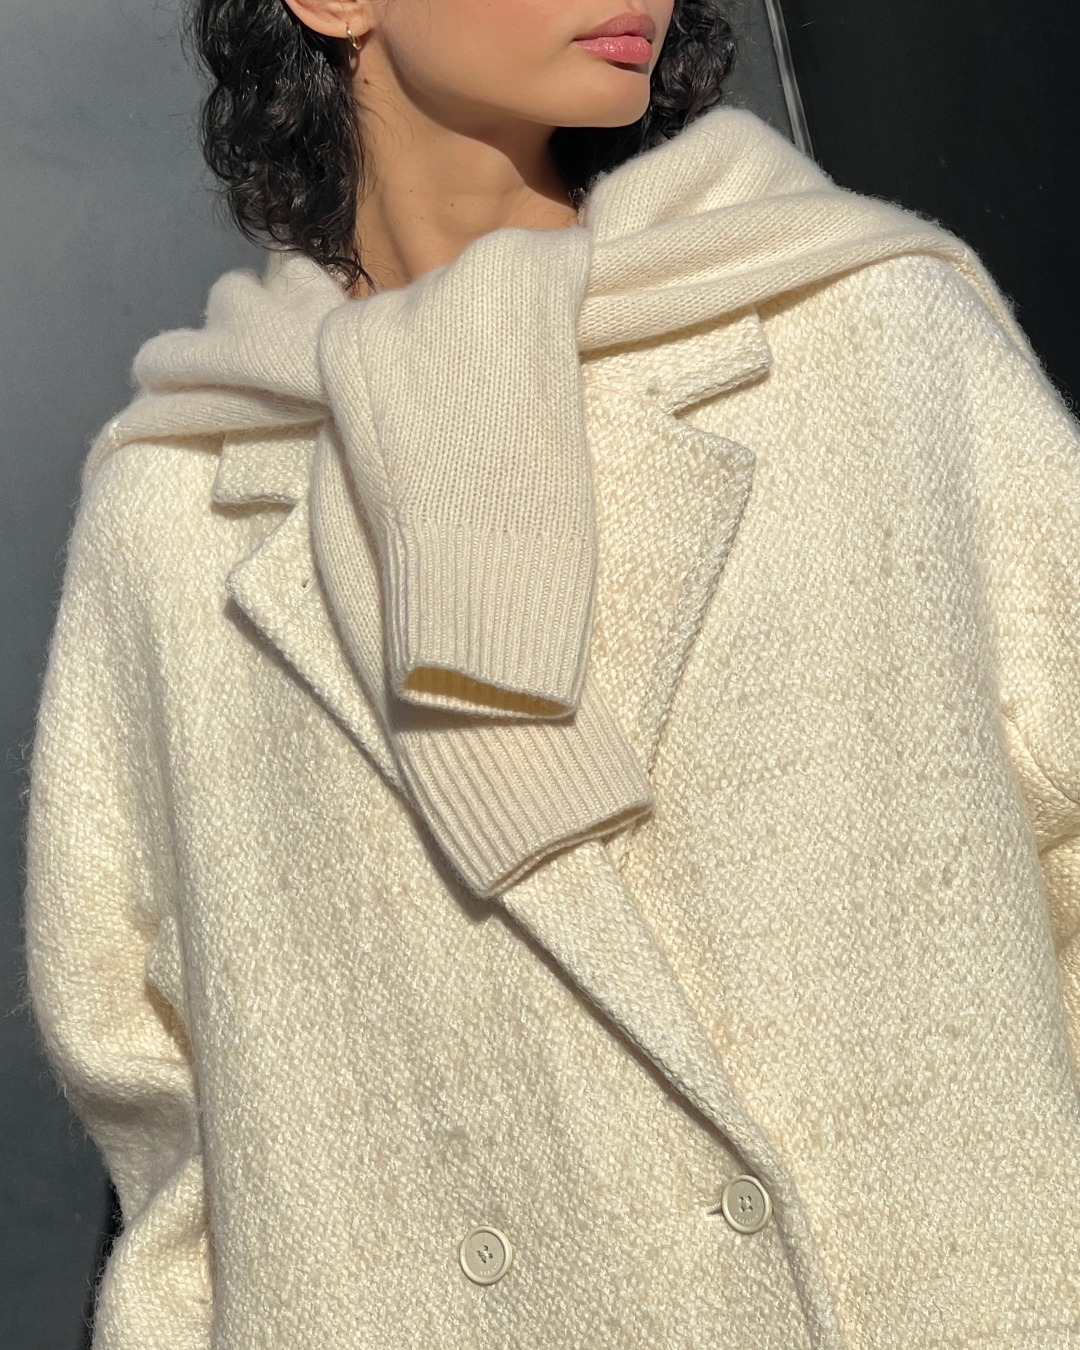 model wearing beige wool coat and sweater